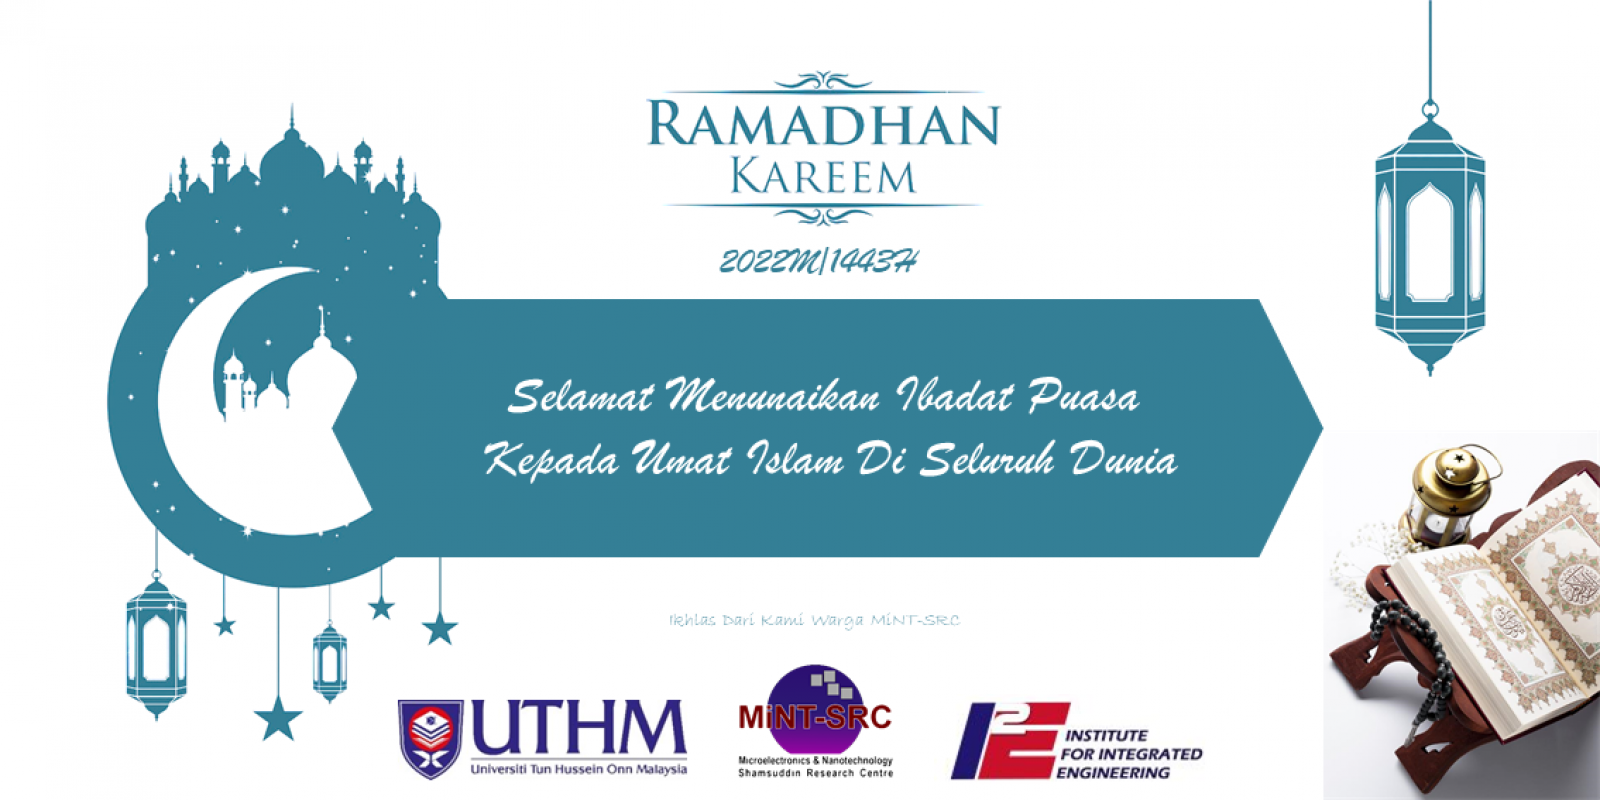 Poster Ramadhan 2022M1443H